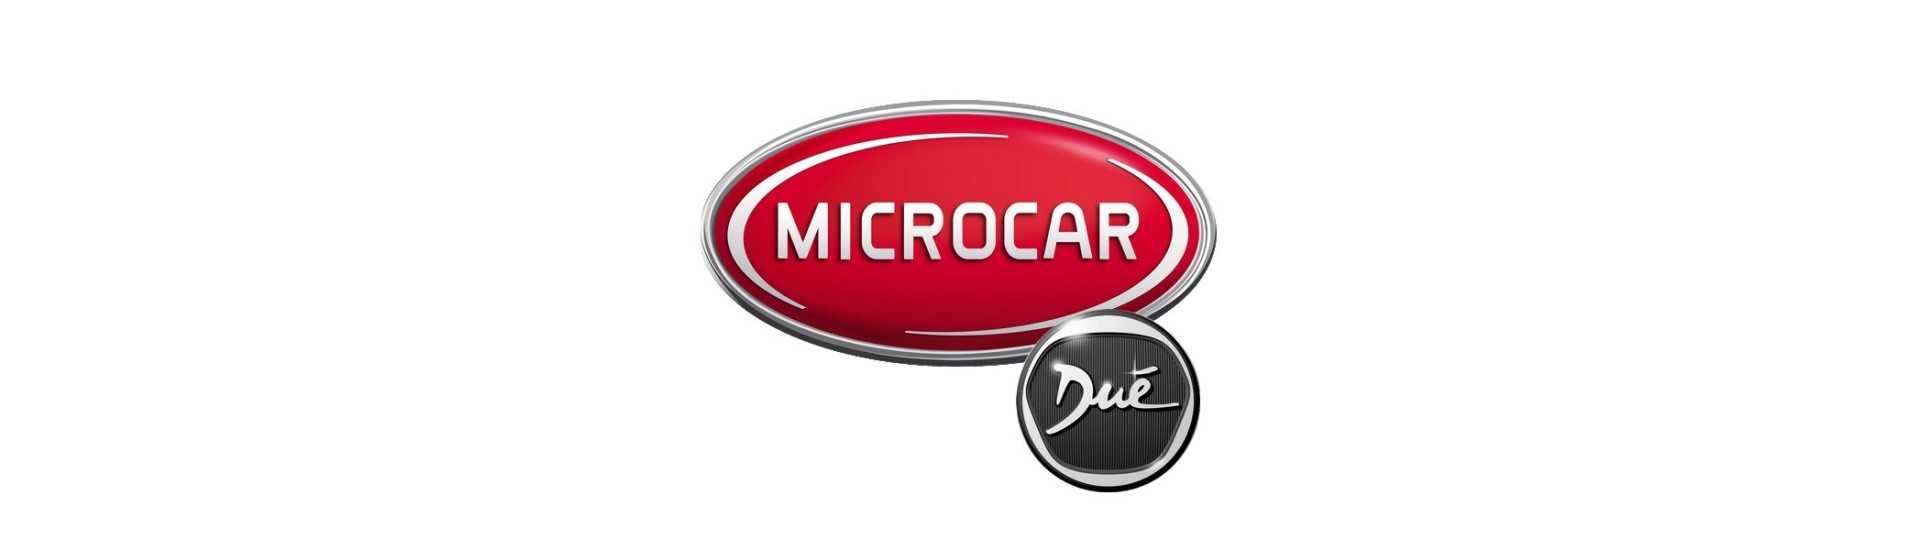 Bolso vazio ao melhor preço para o carro sem licença Microcar Dué